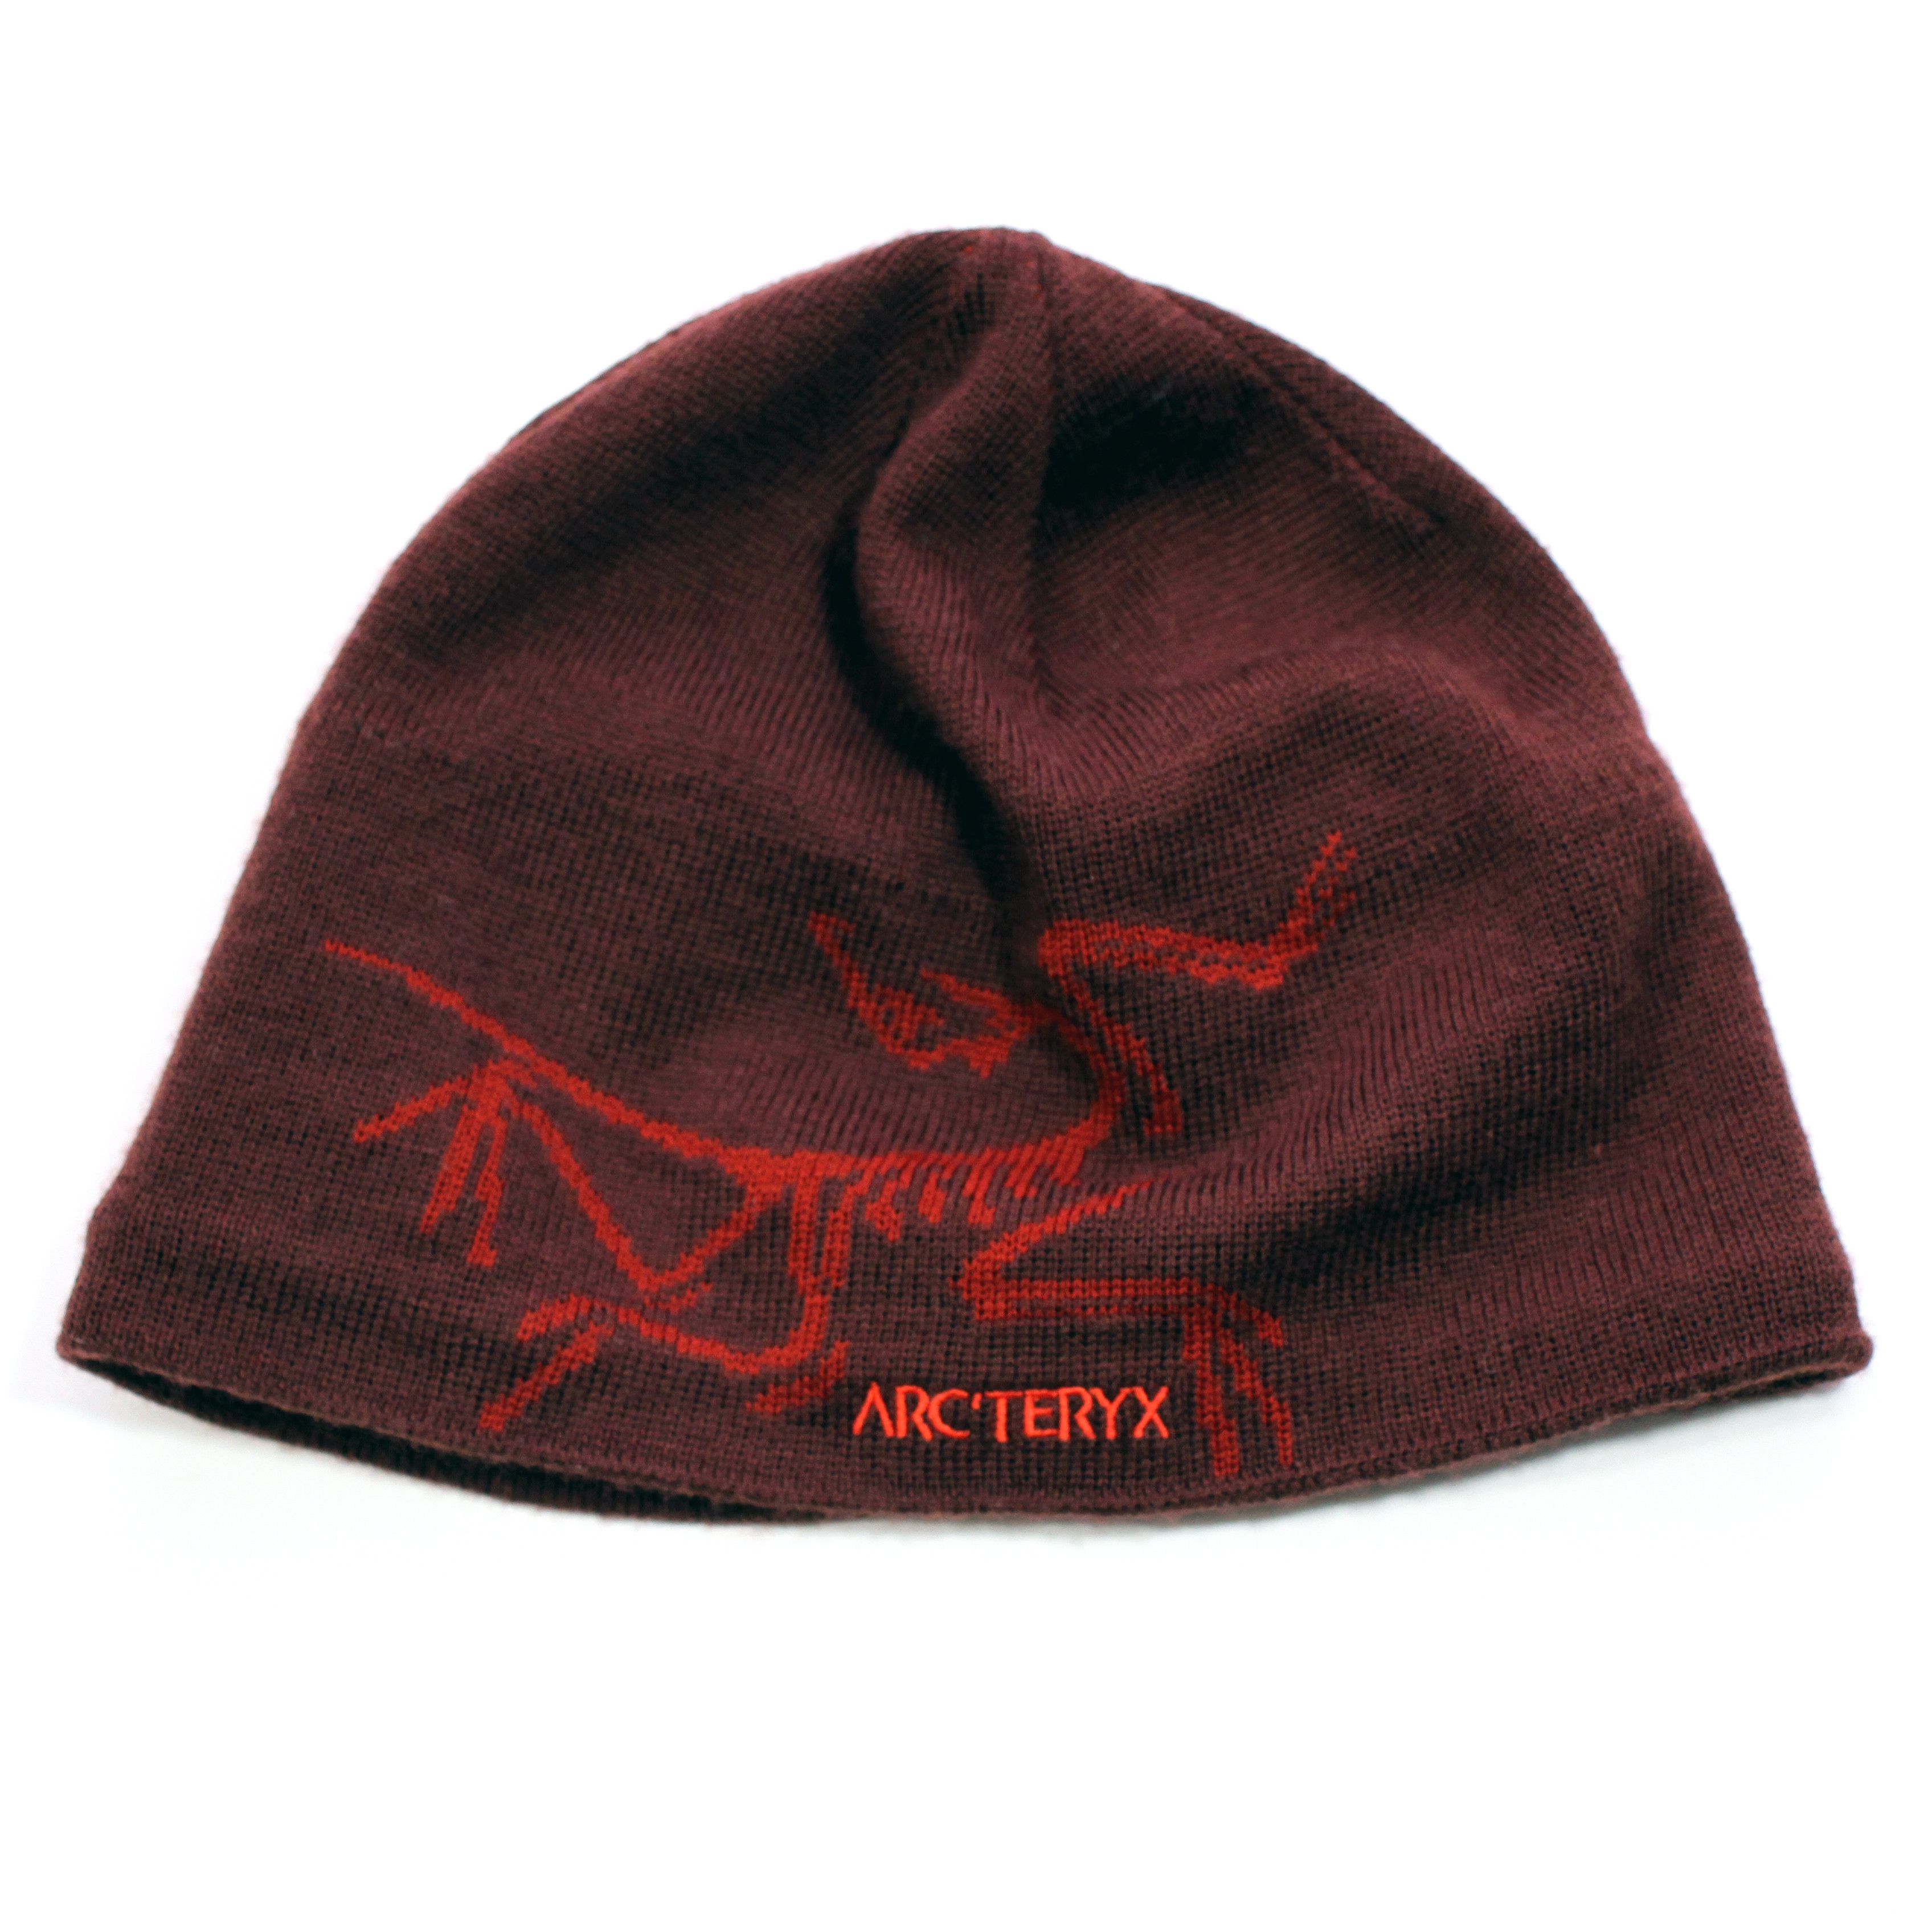 Arc'Teryx Arc'teryx Bird Head Toque Winter Hat Beanie Brown Arcteryx ...